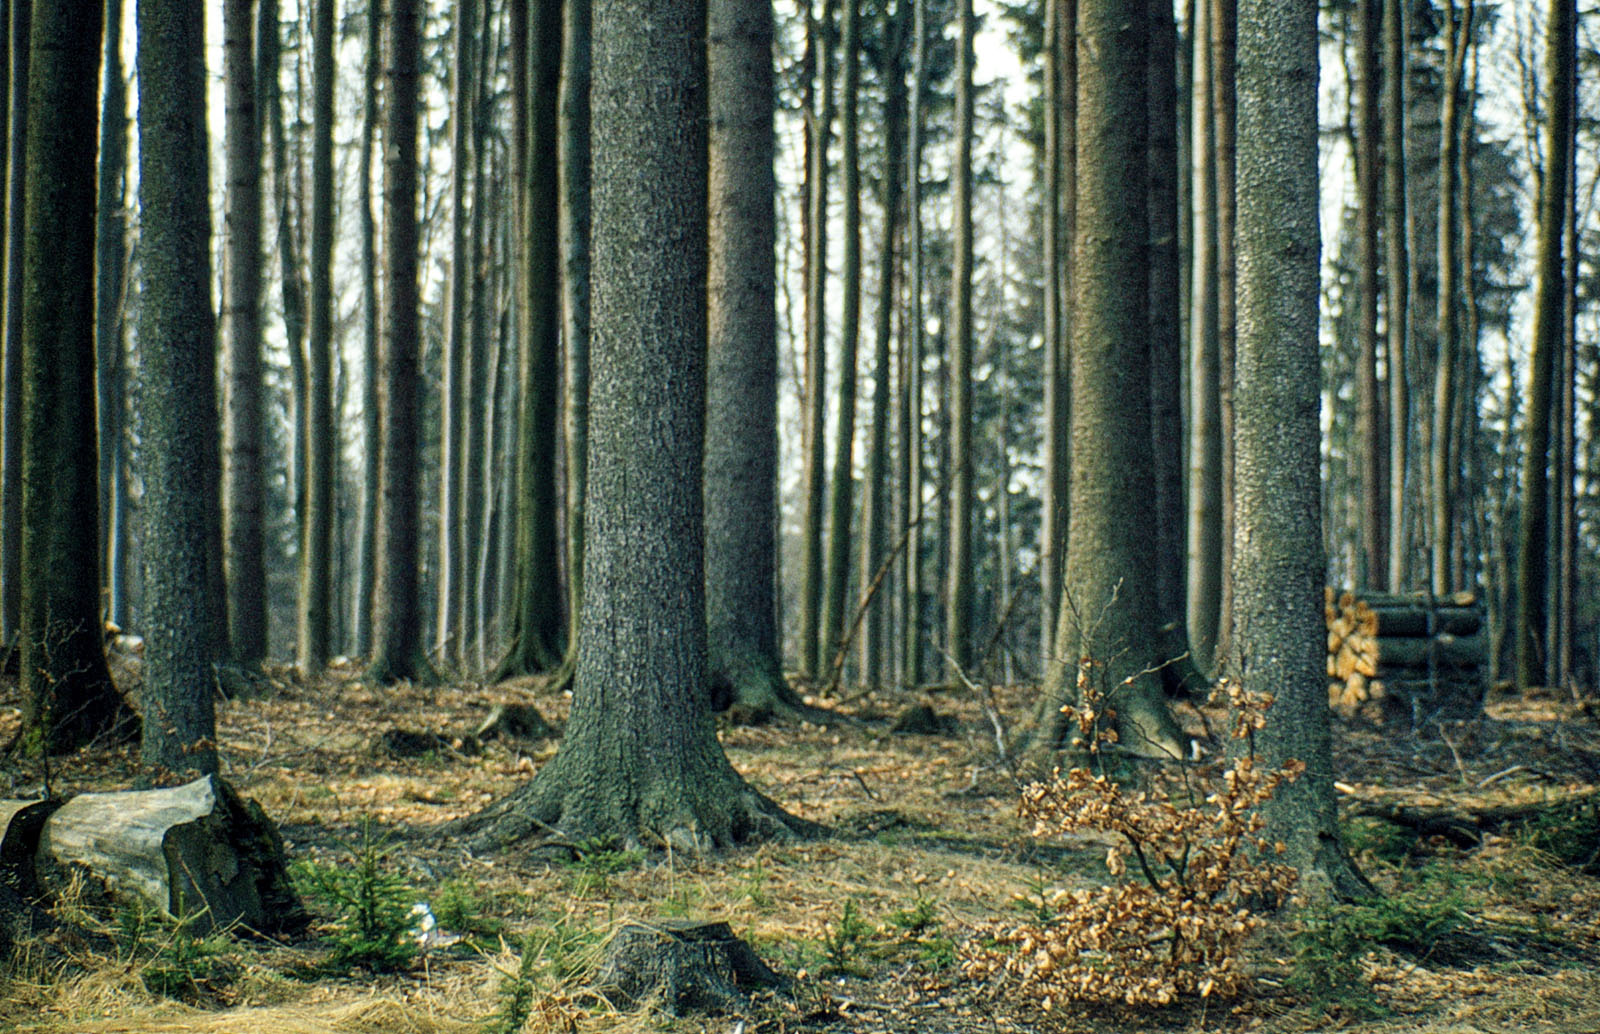 Fichtenwald mit viel Platz für die großen Bäume